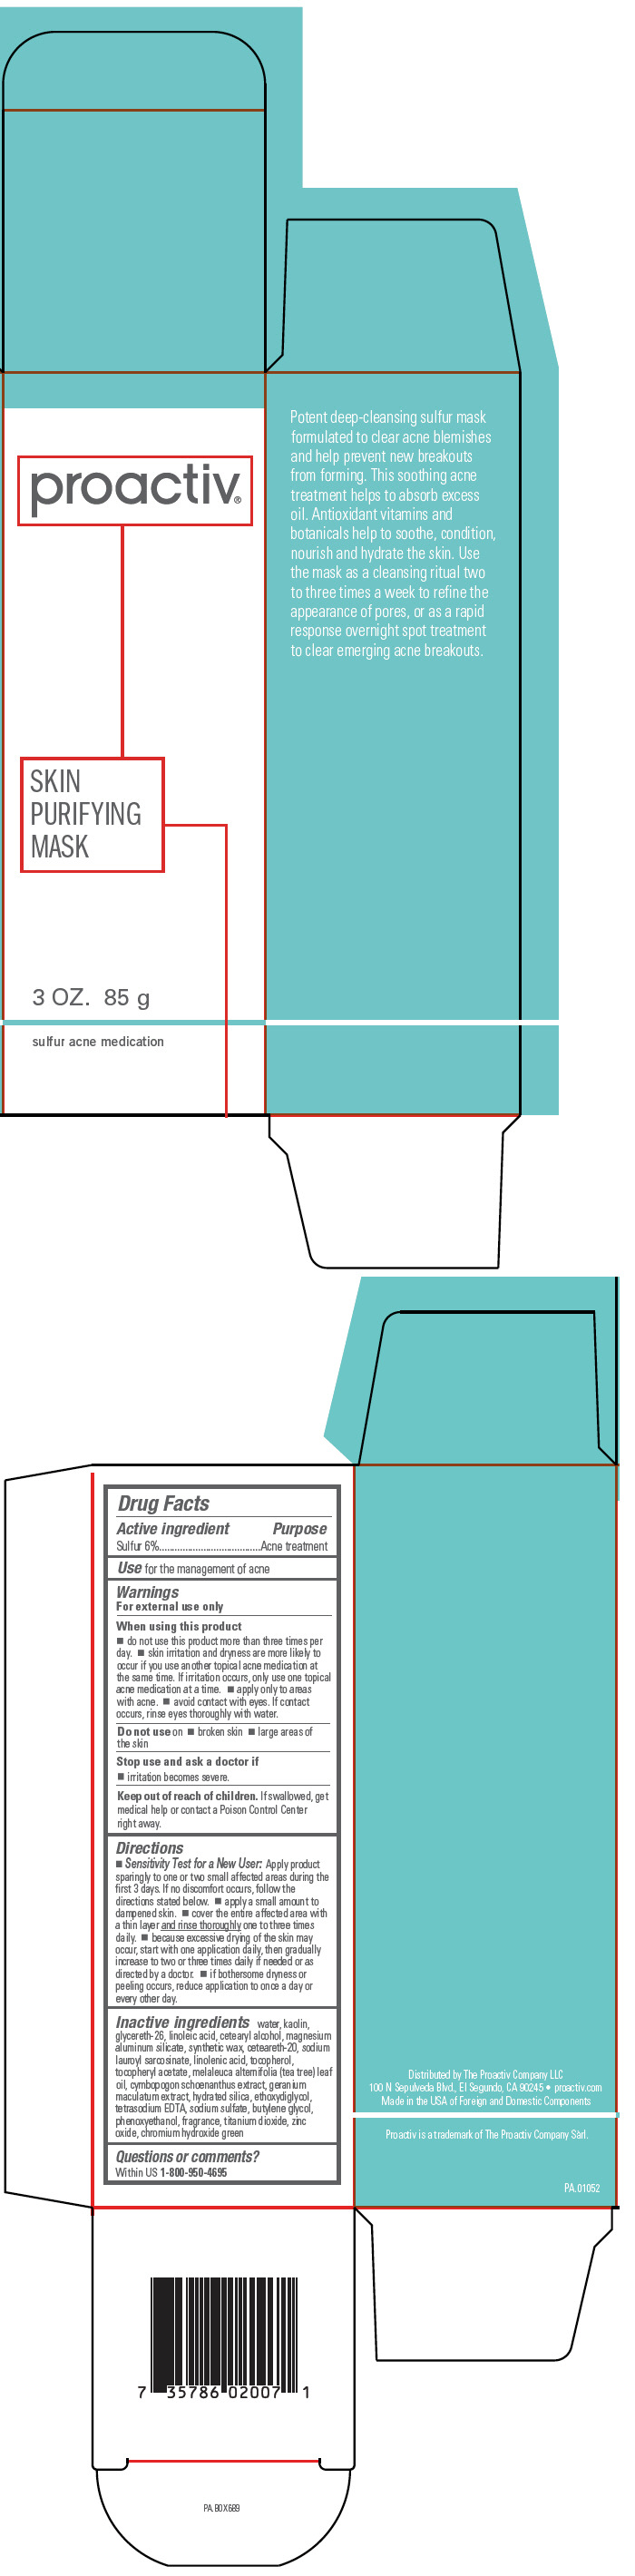 PRINCIPAL DISPLAY PANEL - 85 g Tube Carton